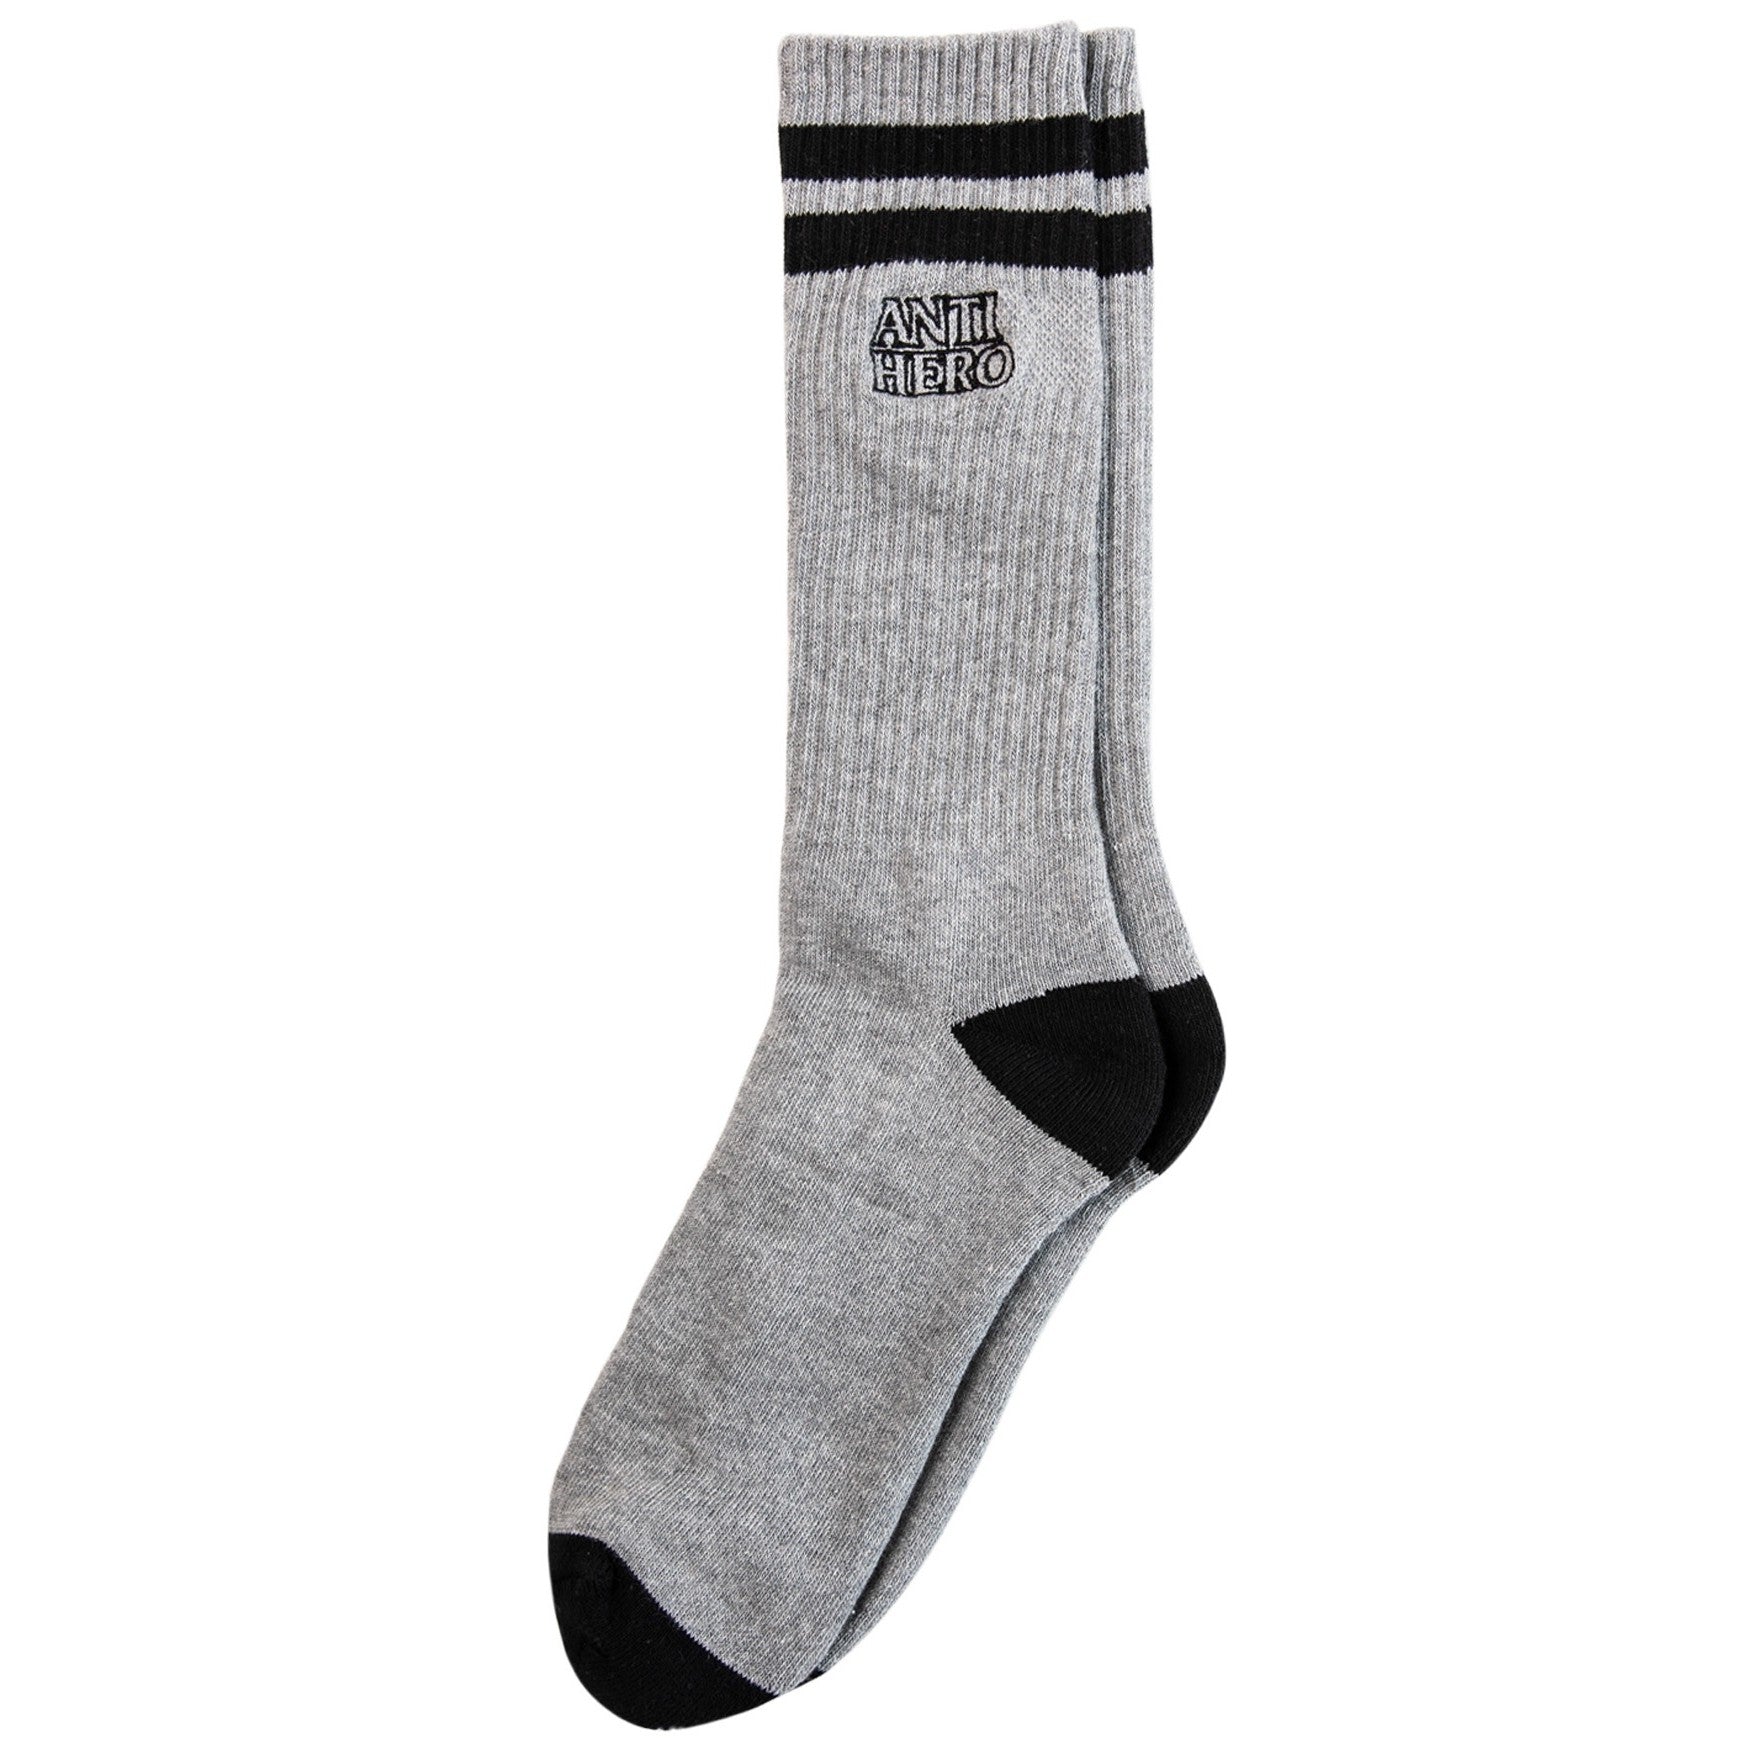 Anti-Hero Skateboards Socks - Grey